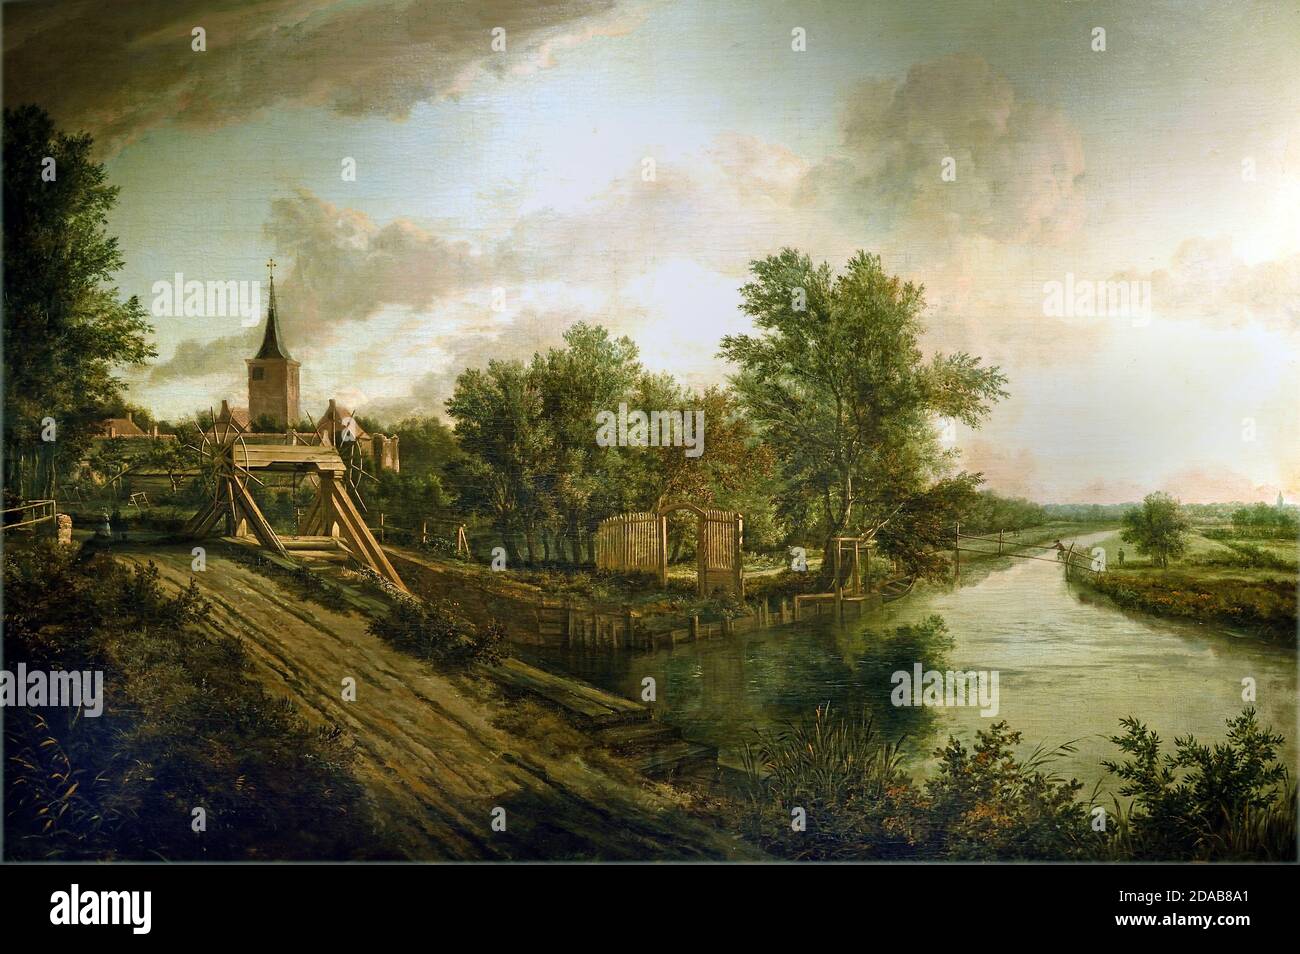 Paesaggio con Overtoom 1660 Paesi Bassi, olandese. ( un overtoom è un impianto in cui una nave è tirata sopra terra da un'acqua all'altra, con lo scopo di superare una differenza di livello dell'acqua. l'overtoom può essere visto come un precursore del blocco. ) Foto Stock